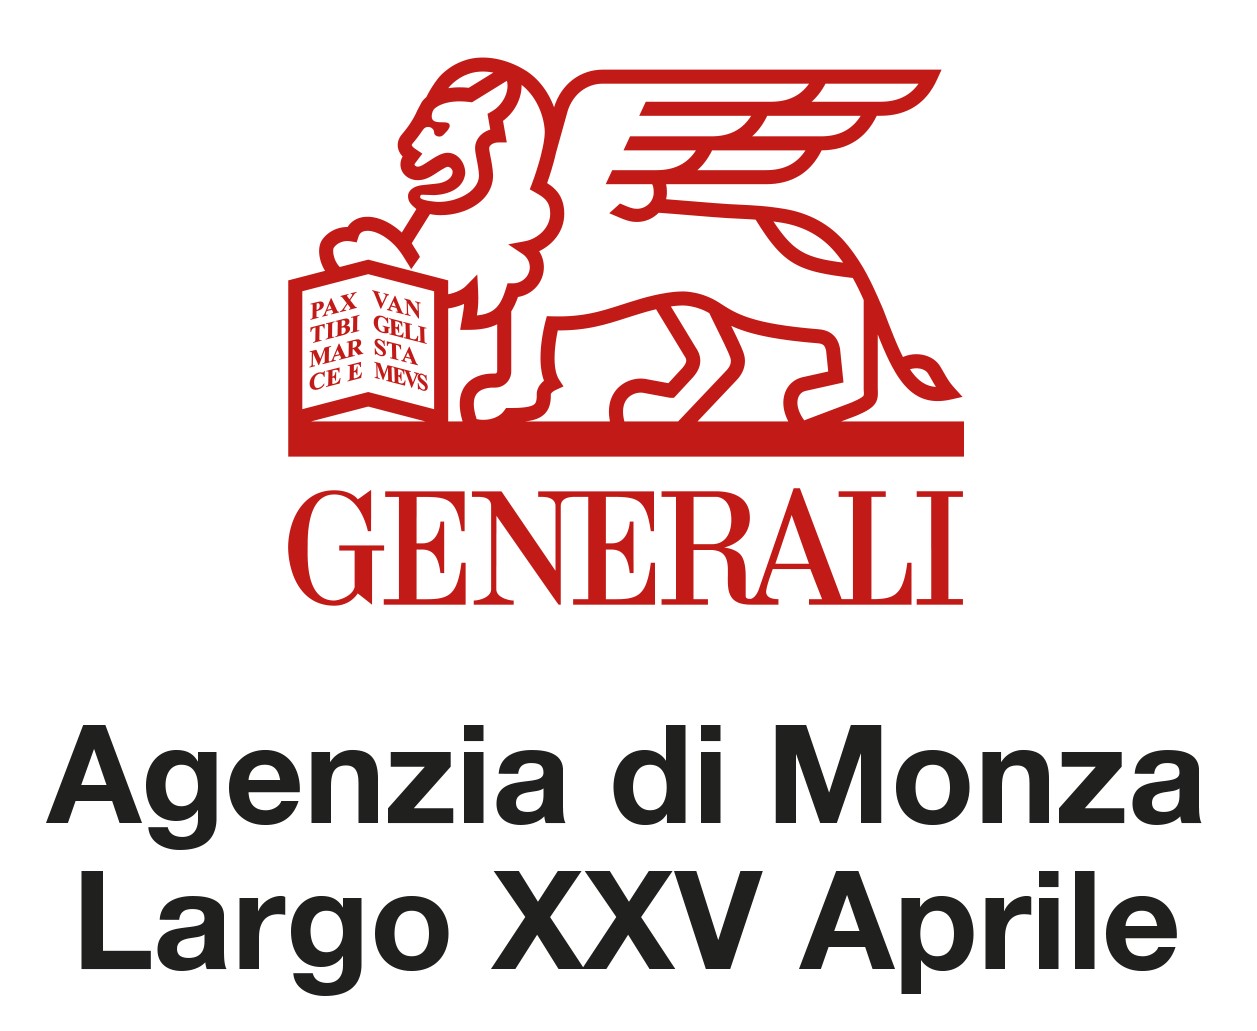 Generali Agenzia di Monza